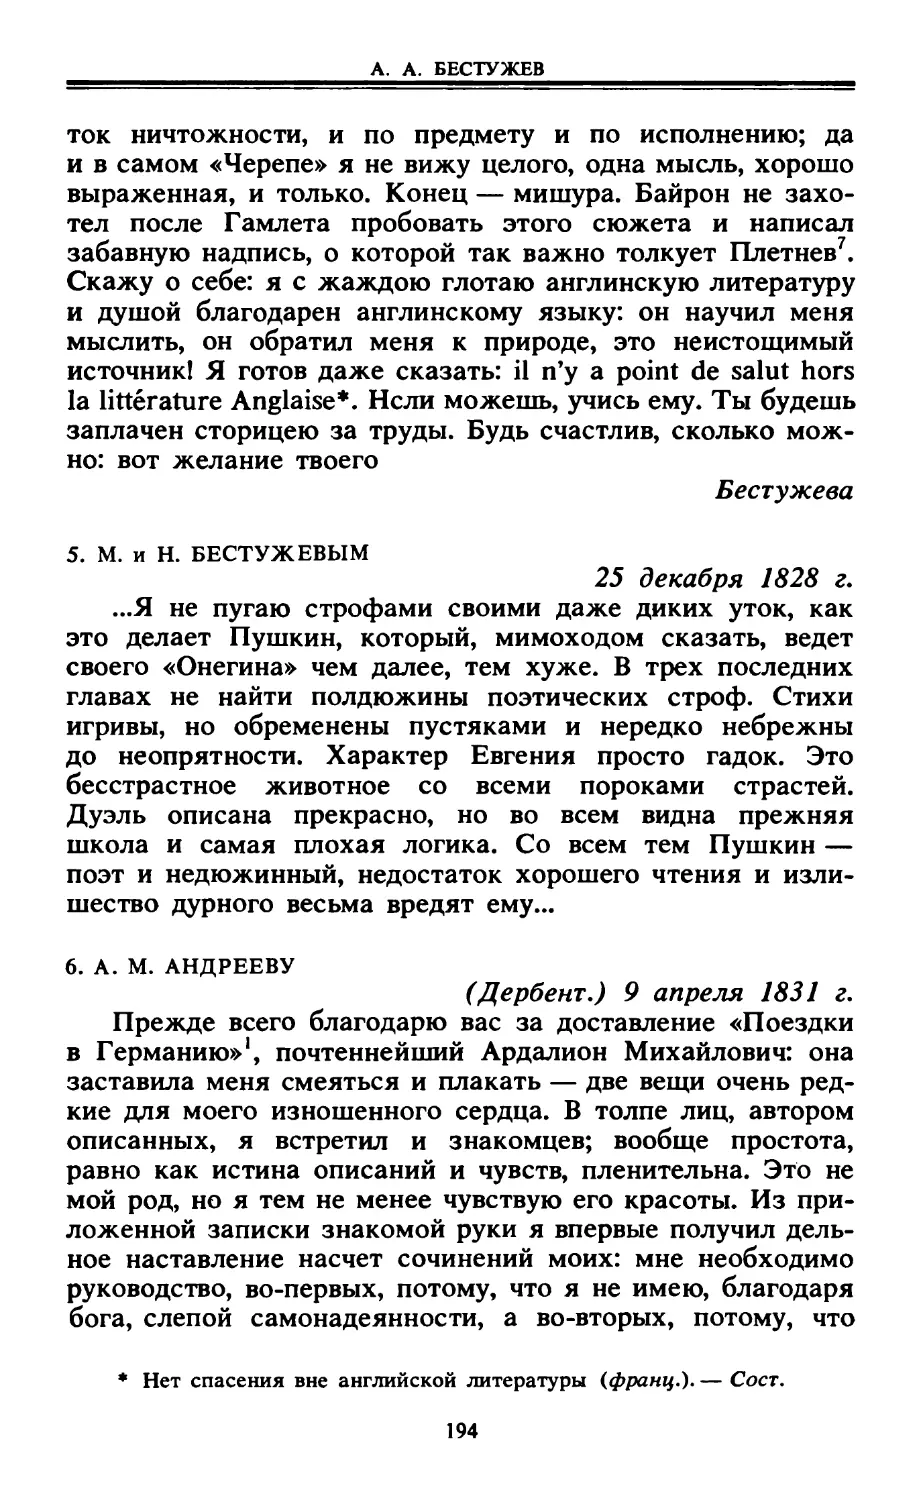 5. М. и Н. Бестужевым. 25 декабря 1828 г.
6. А. М. Андрееву. 9 апреля 1831 г.